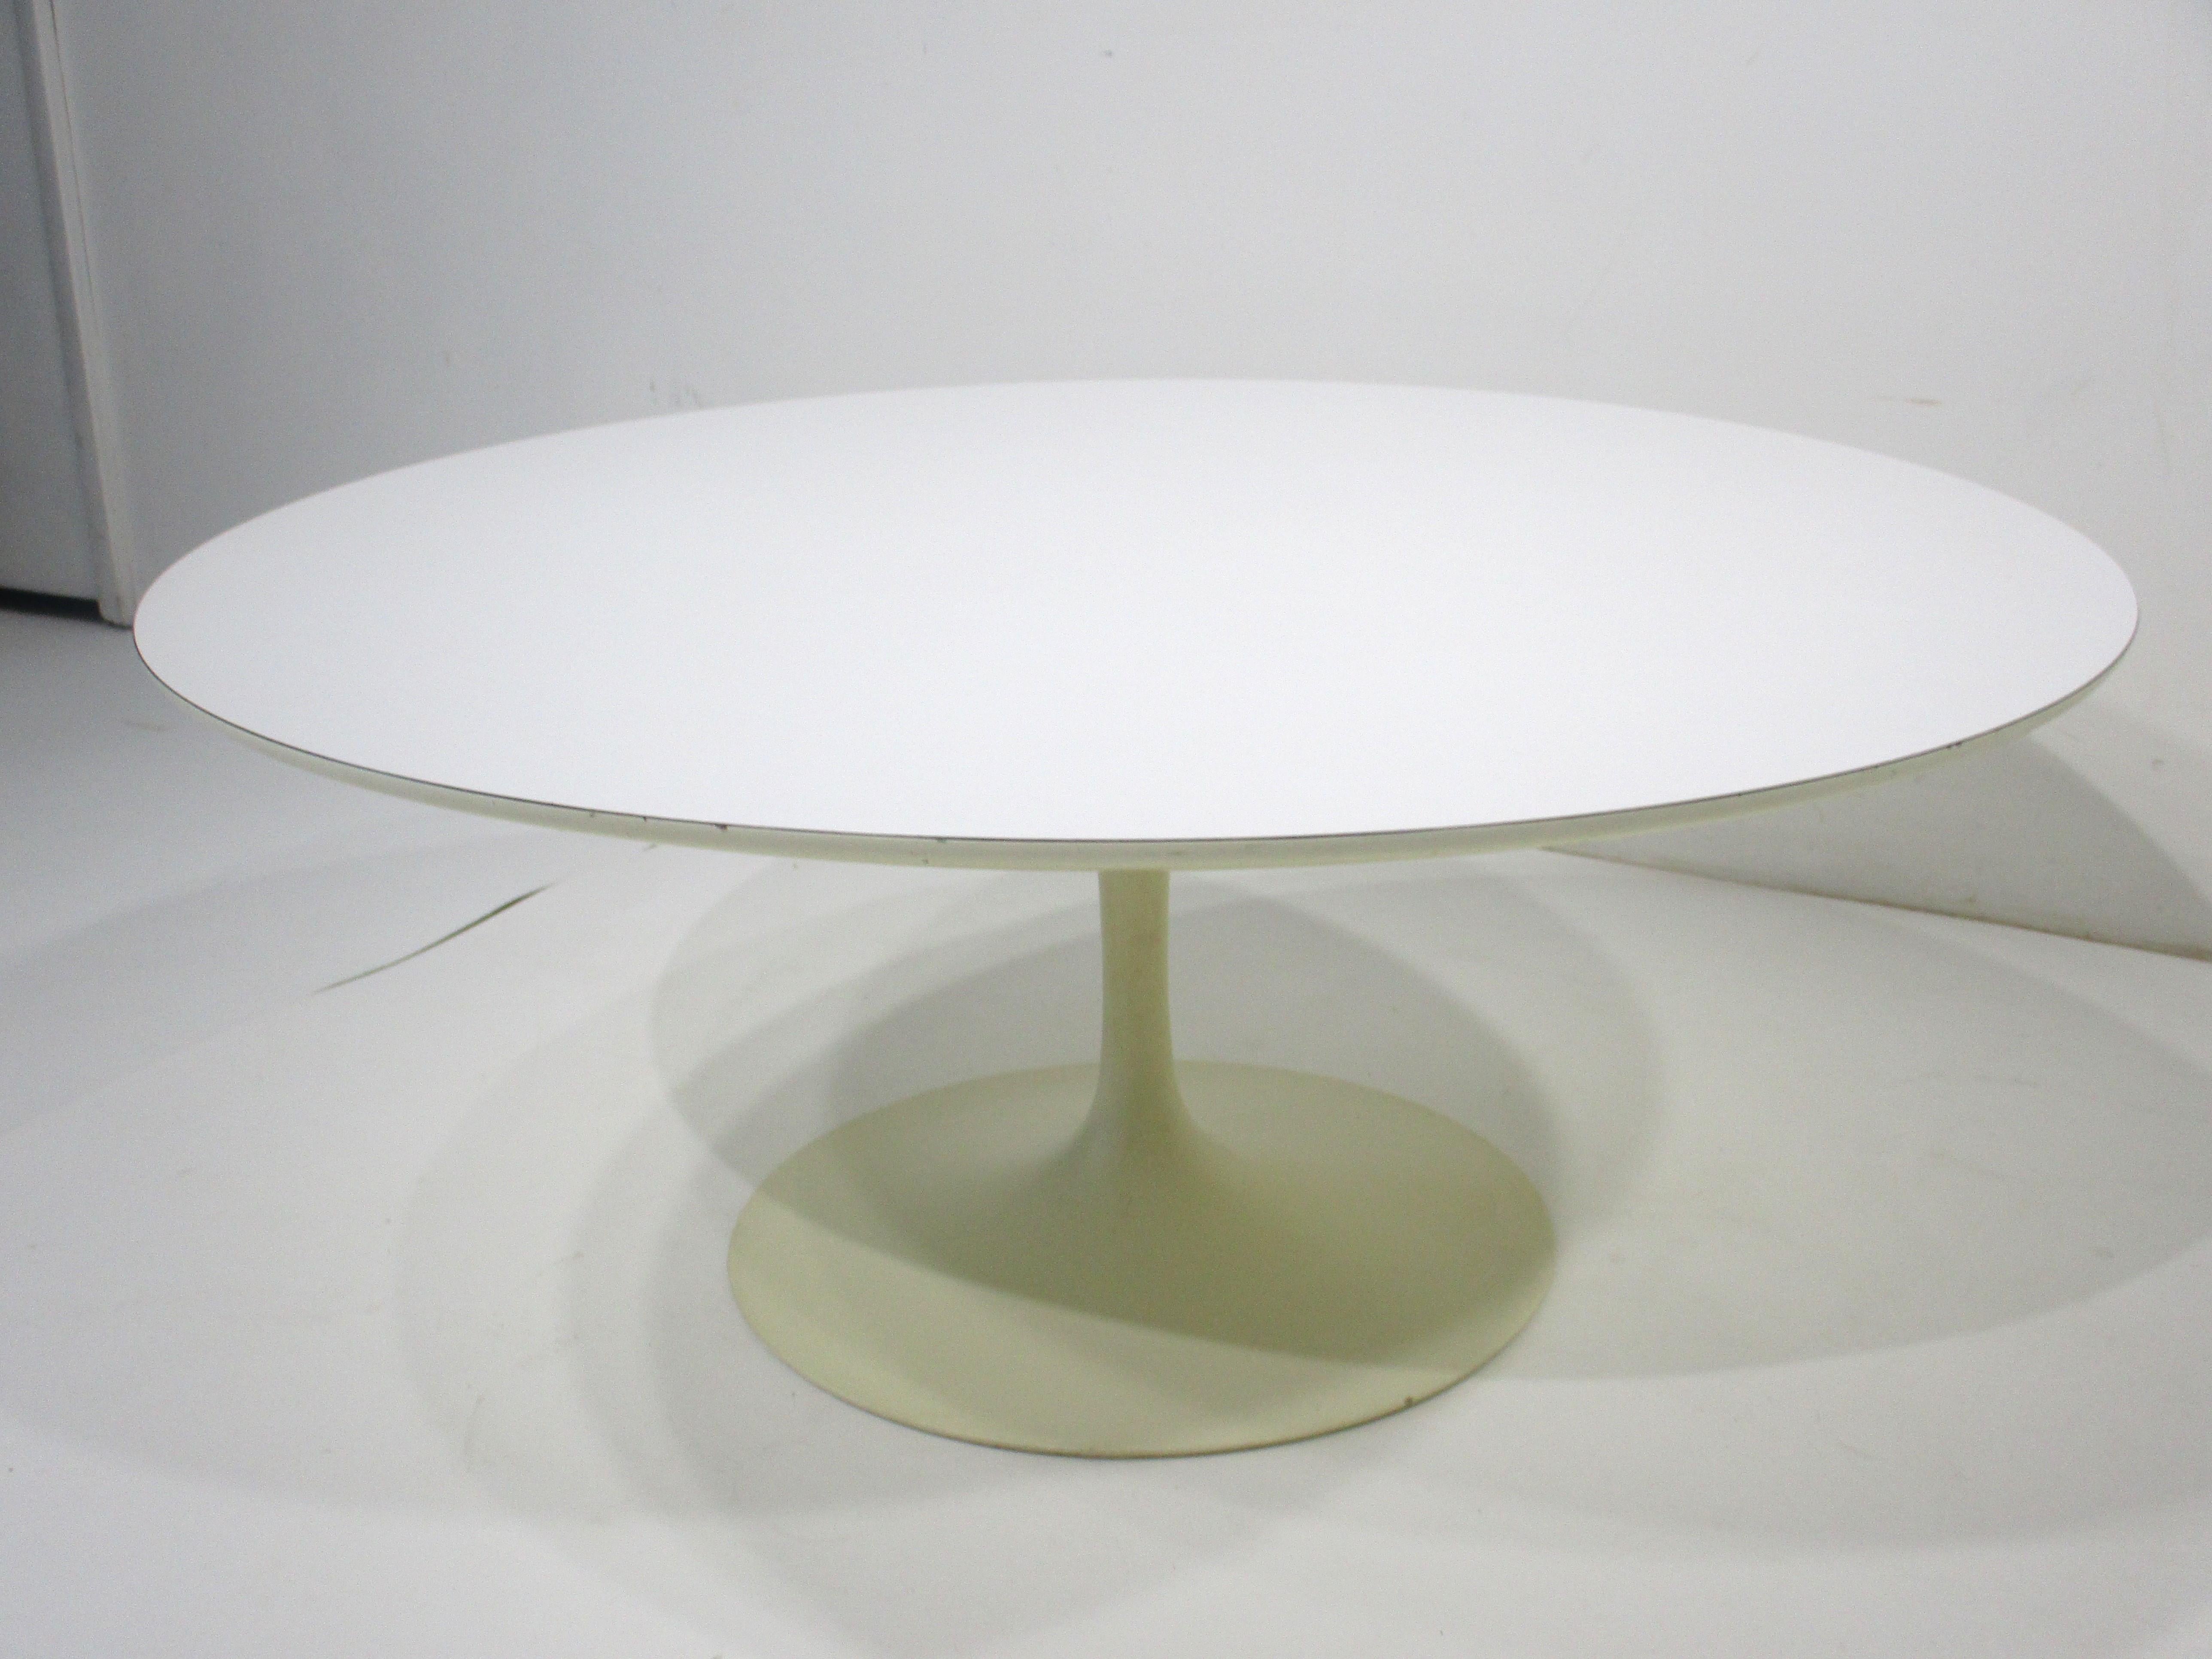 Ein skulpturaler weißer Tulpen-Couchtisch mit Stahlgestell und Laminatplatte von Designer, Architekt und Künstler Eero Saarinen. Dieser ikonische Tisch ist seit seinen Anfängen eine wichtige Stütze der modernen Mid-Century-Design-Bewegung und ist